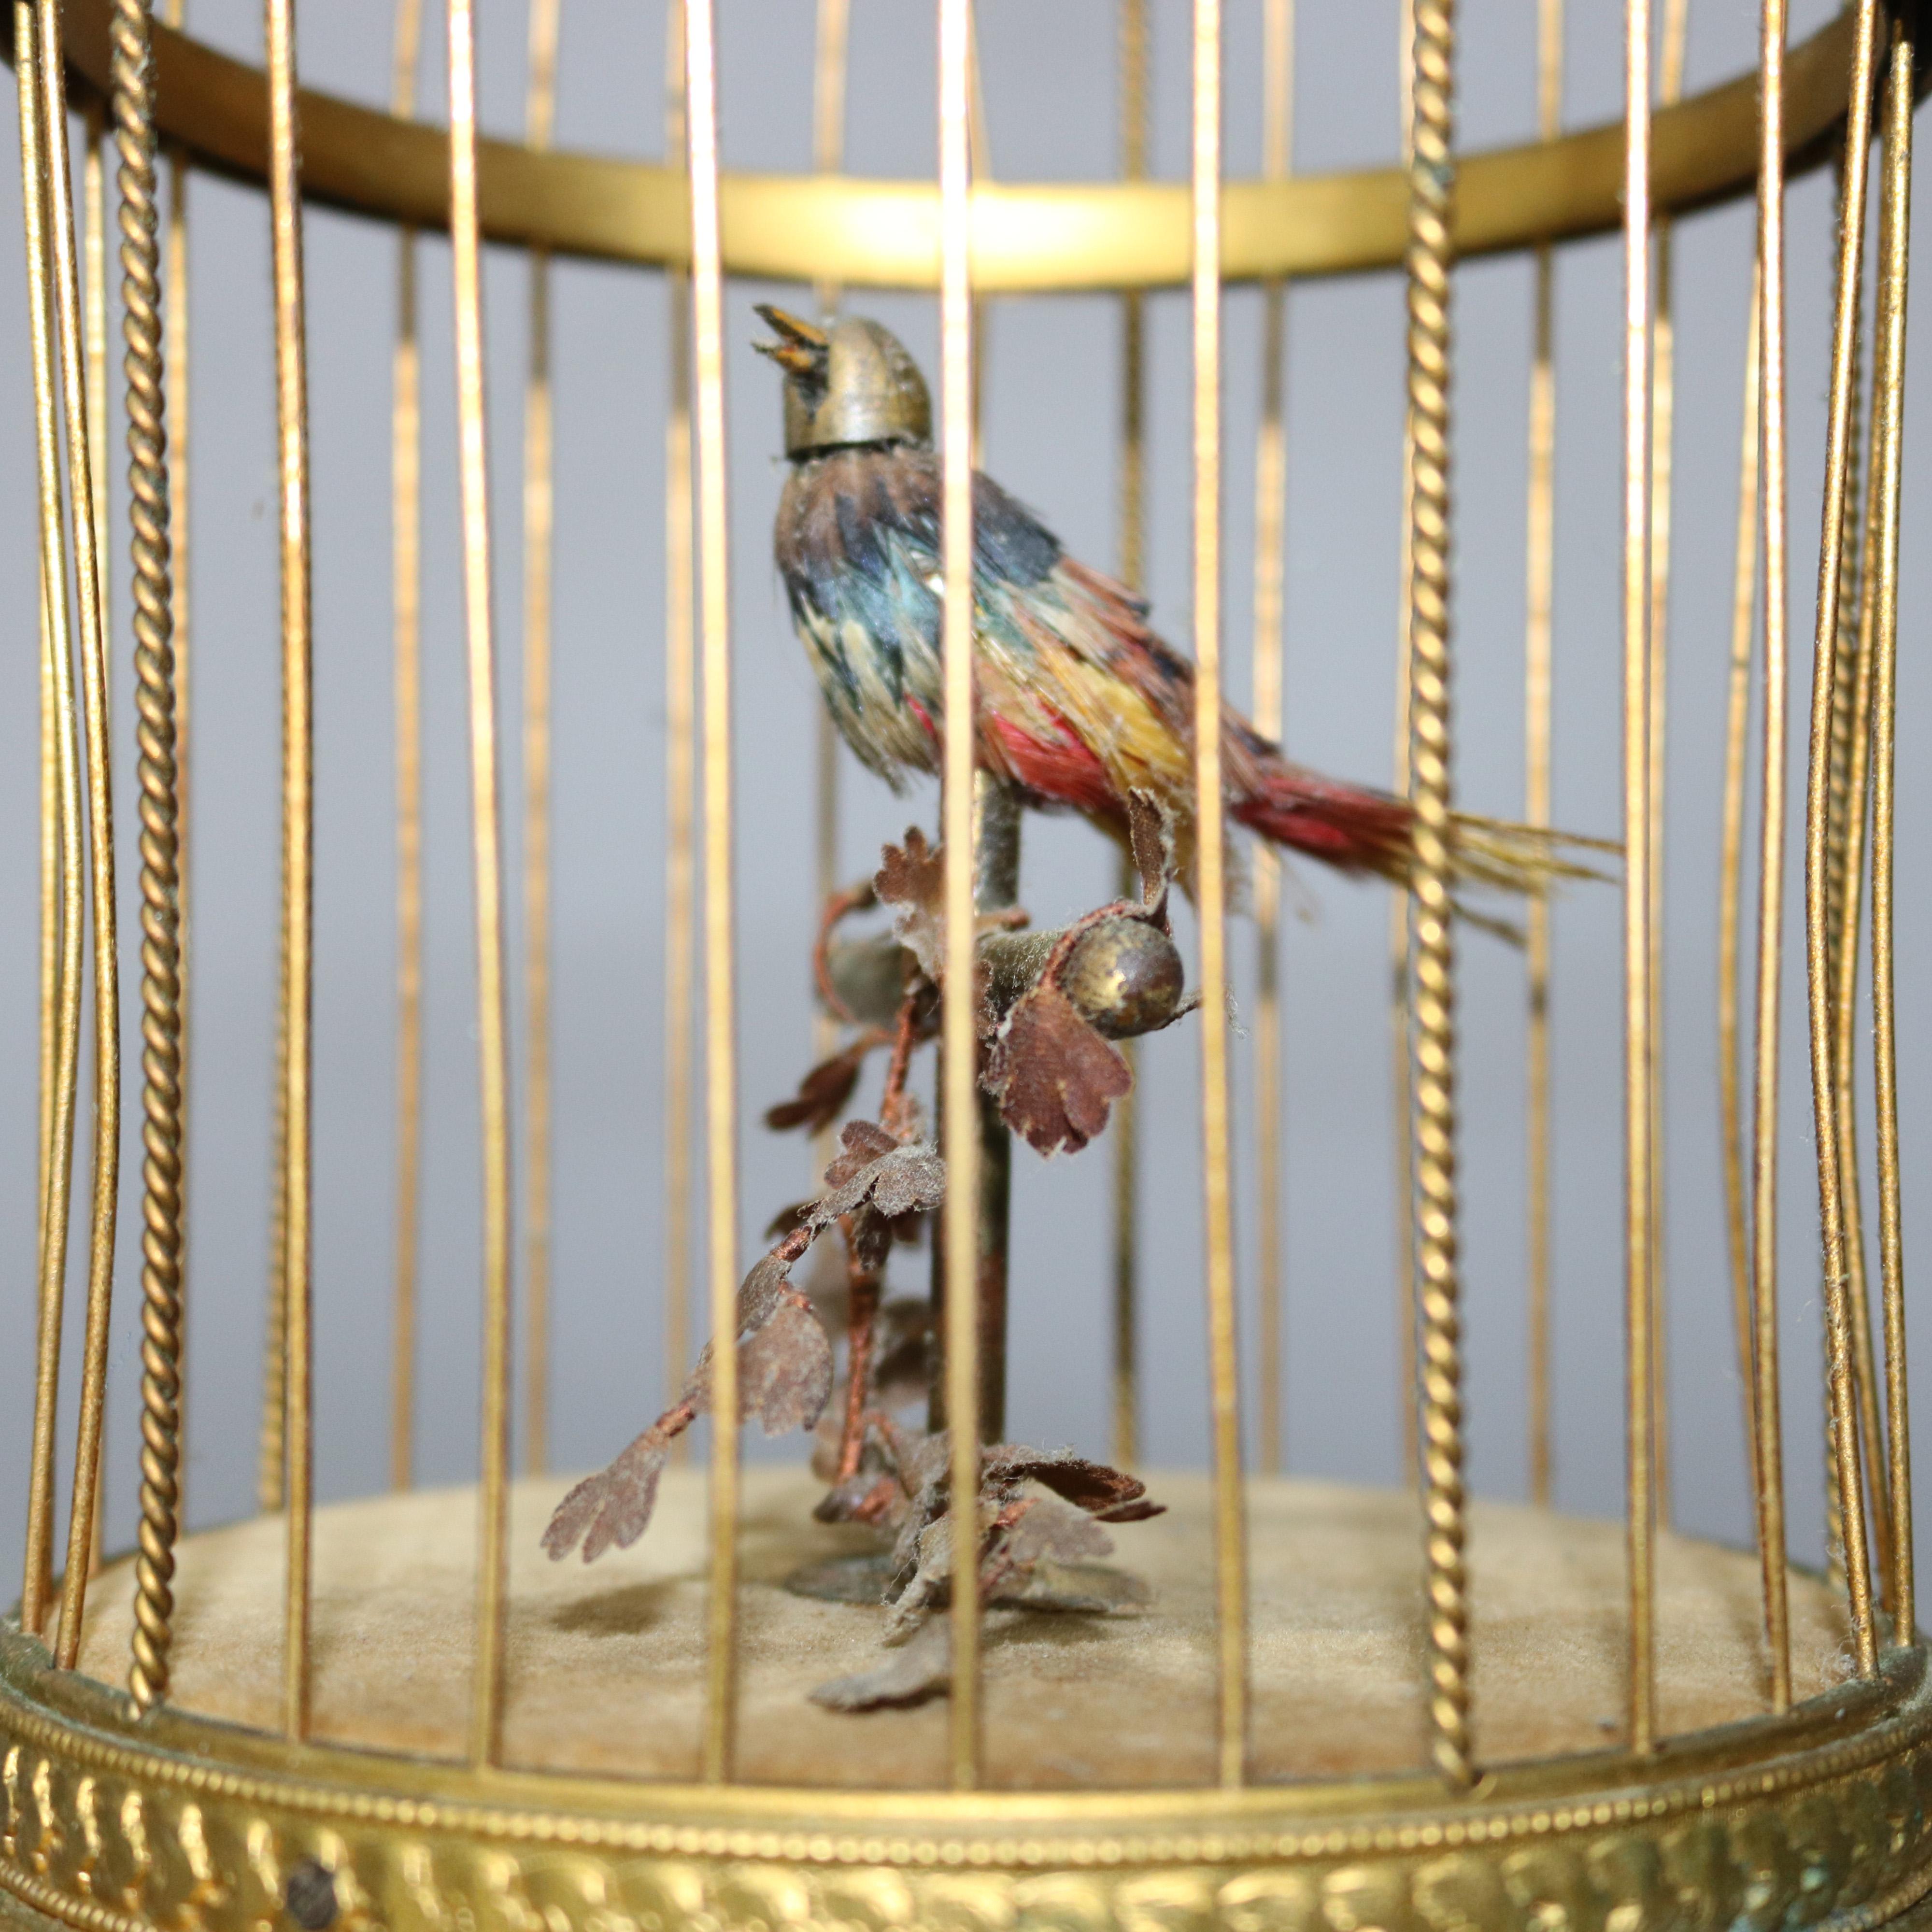 Une boîte à musique française ancienne à automate offre un oiseau chantant assis sur une branche feuillue dans une cage en laiton:: vers 1880

***Notice de livraison - En raison du COVID-19:: nous employons des PRACTIQUES DE NON-CONTACT dans le